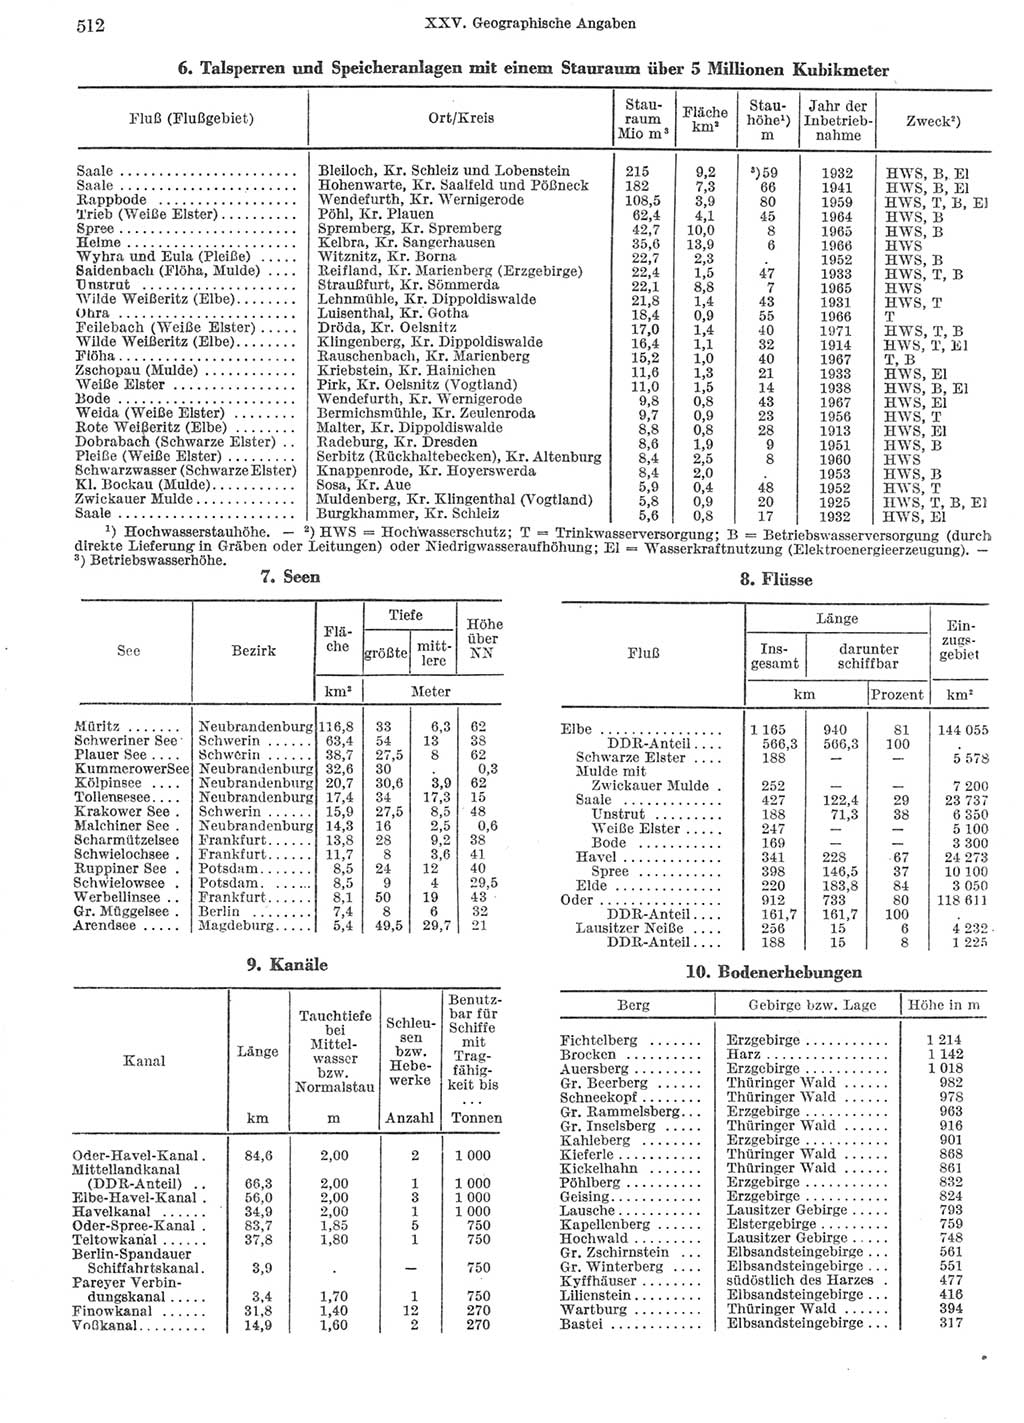 Statistisches Jahrbuch der Deutschen Demokratischen Republik (DDR) 1972, Seite 512 (Stat. Jb. DDR 1972, S. 512)